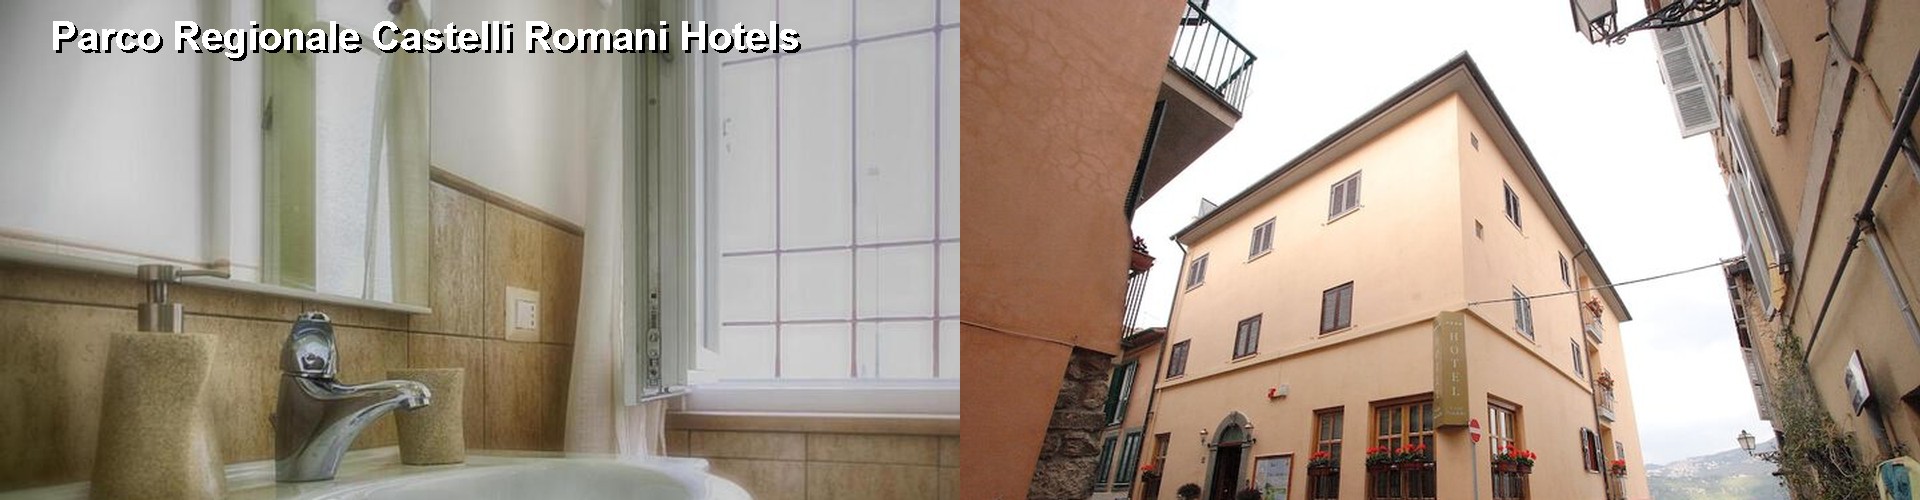 5 Best Hotels near Parco Regionale Castelli Romani